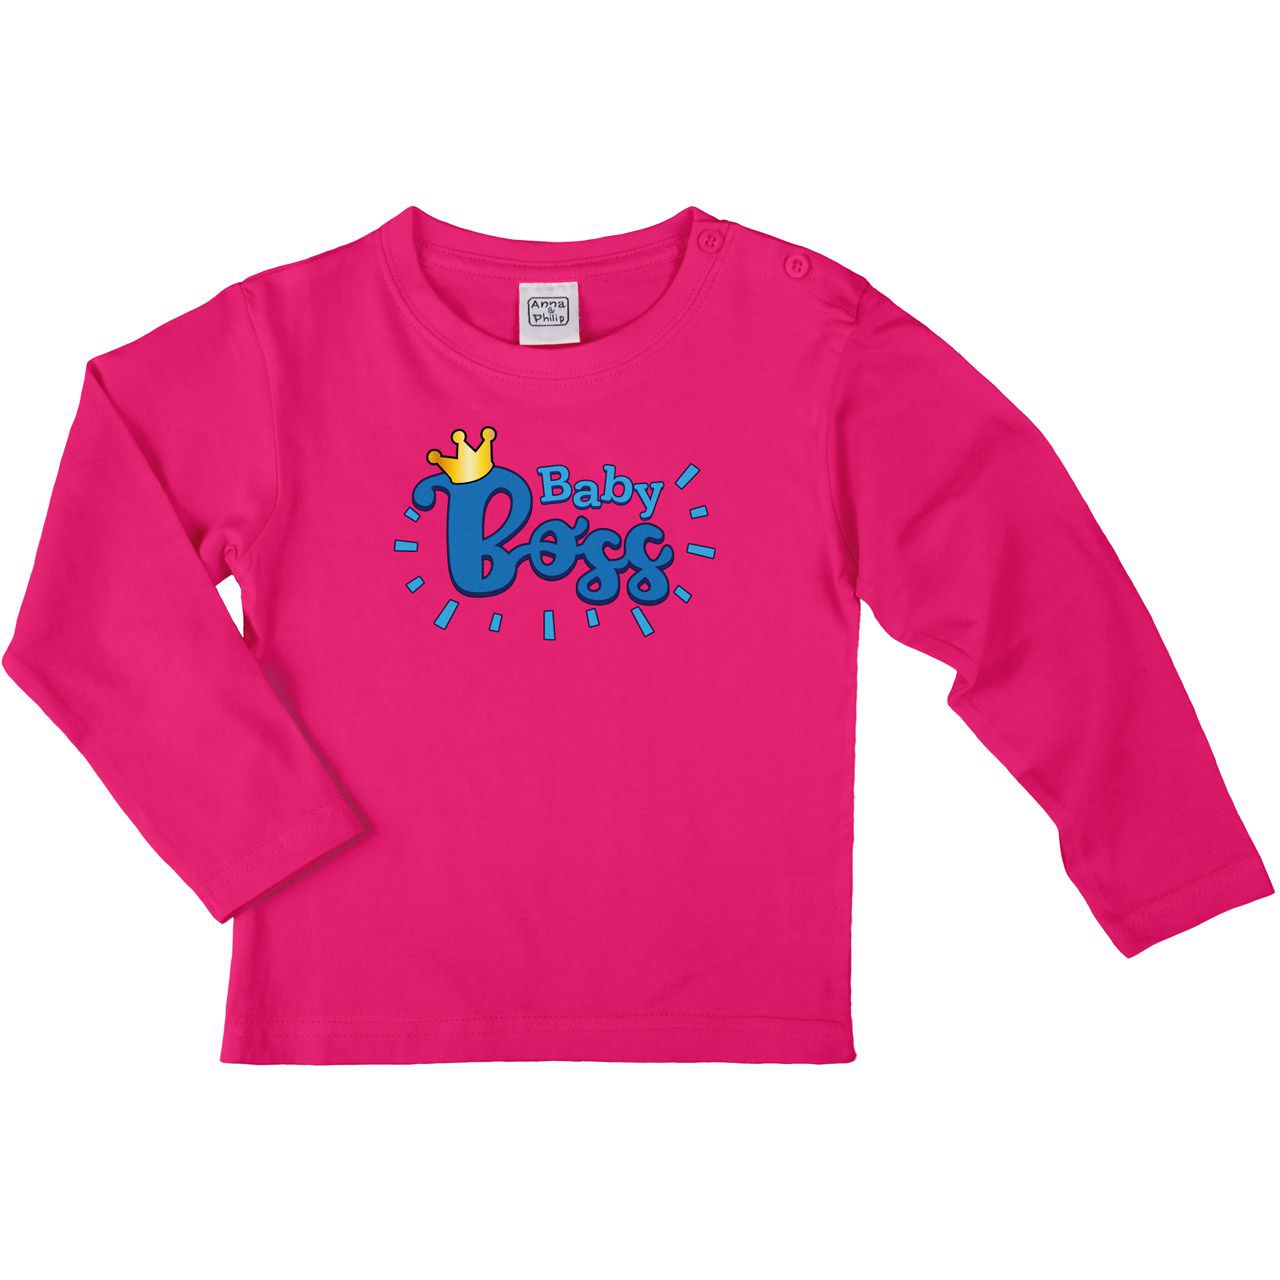 Baby Boss Blau Kinder Langarm Shirt pink 68 / 74